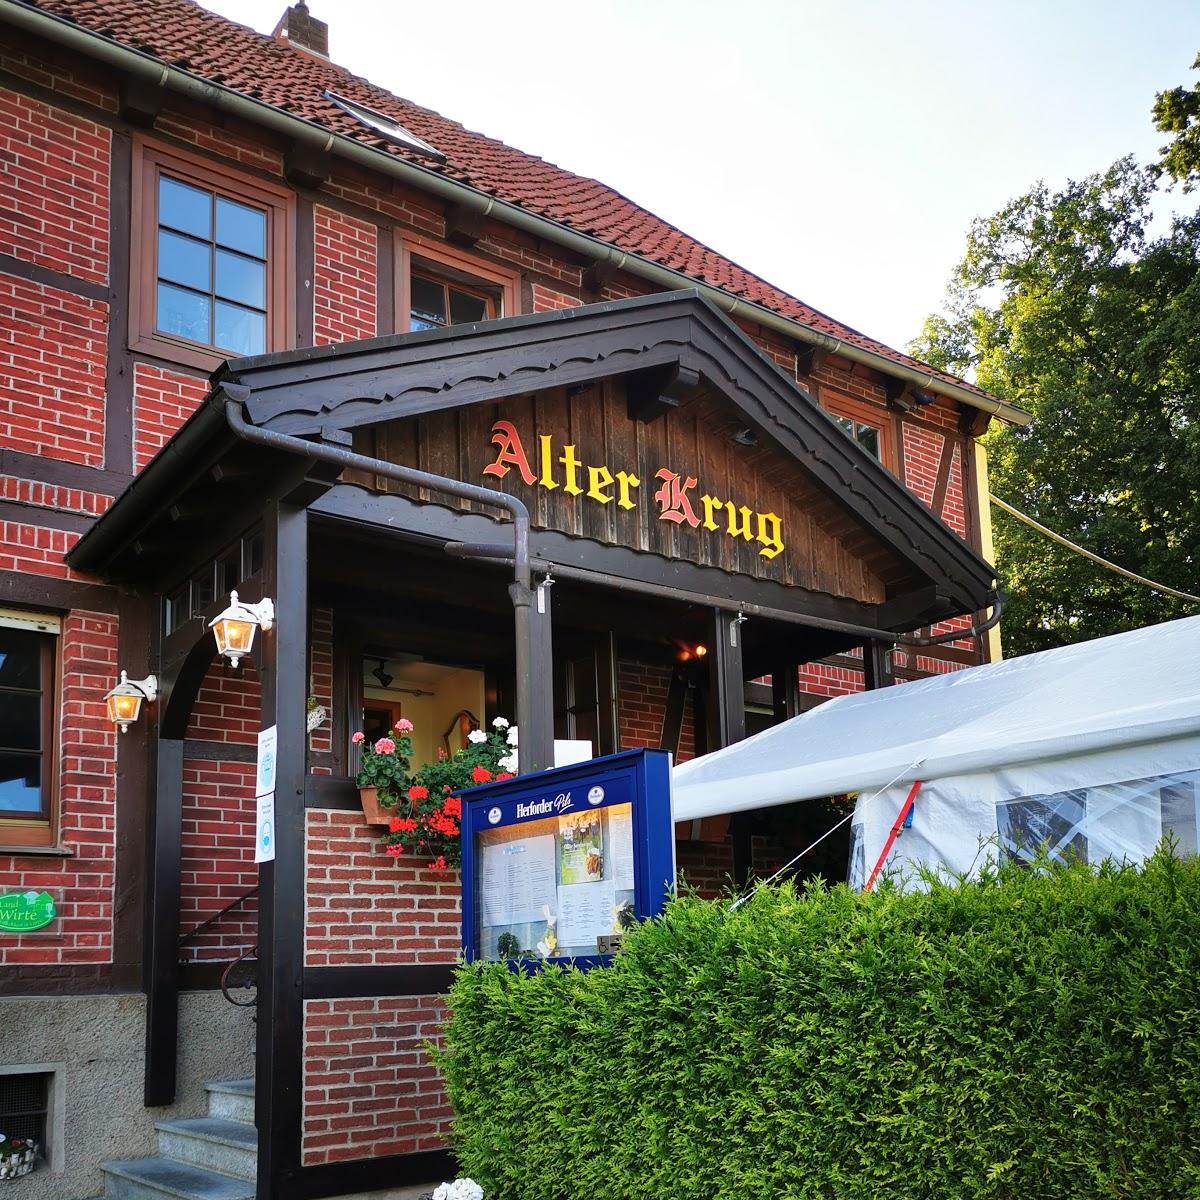 Restaurant "Restaurant Athos" in  Schieder-Schwalenberg